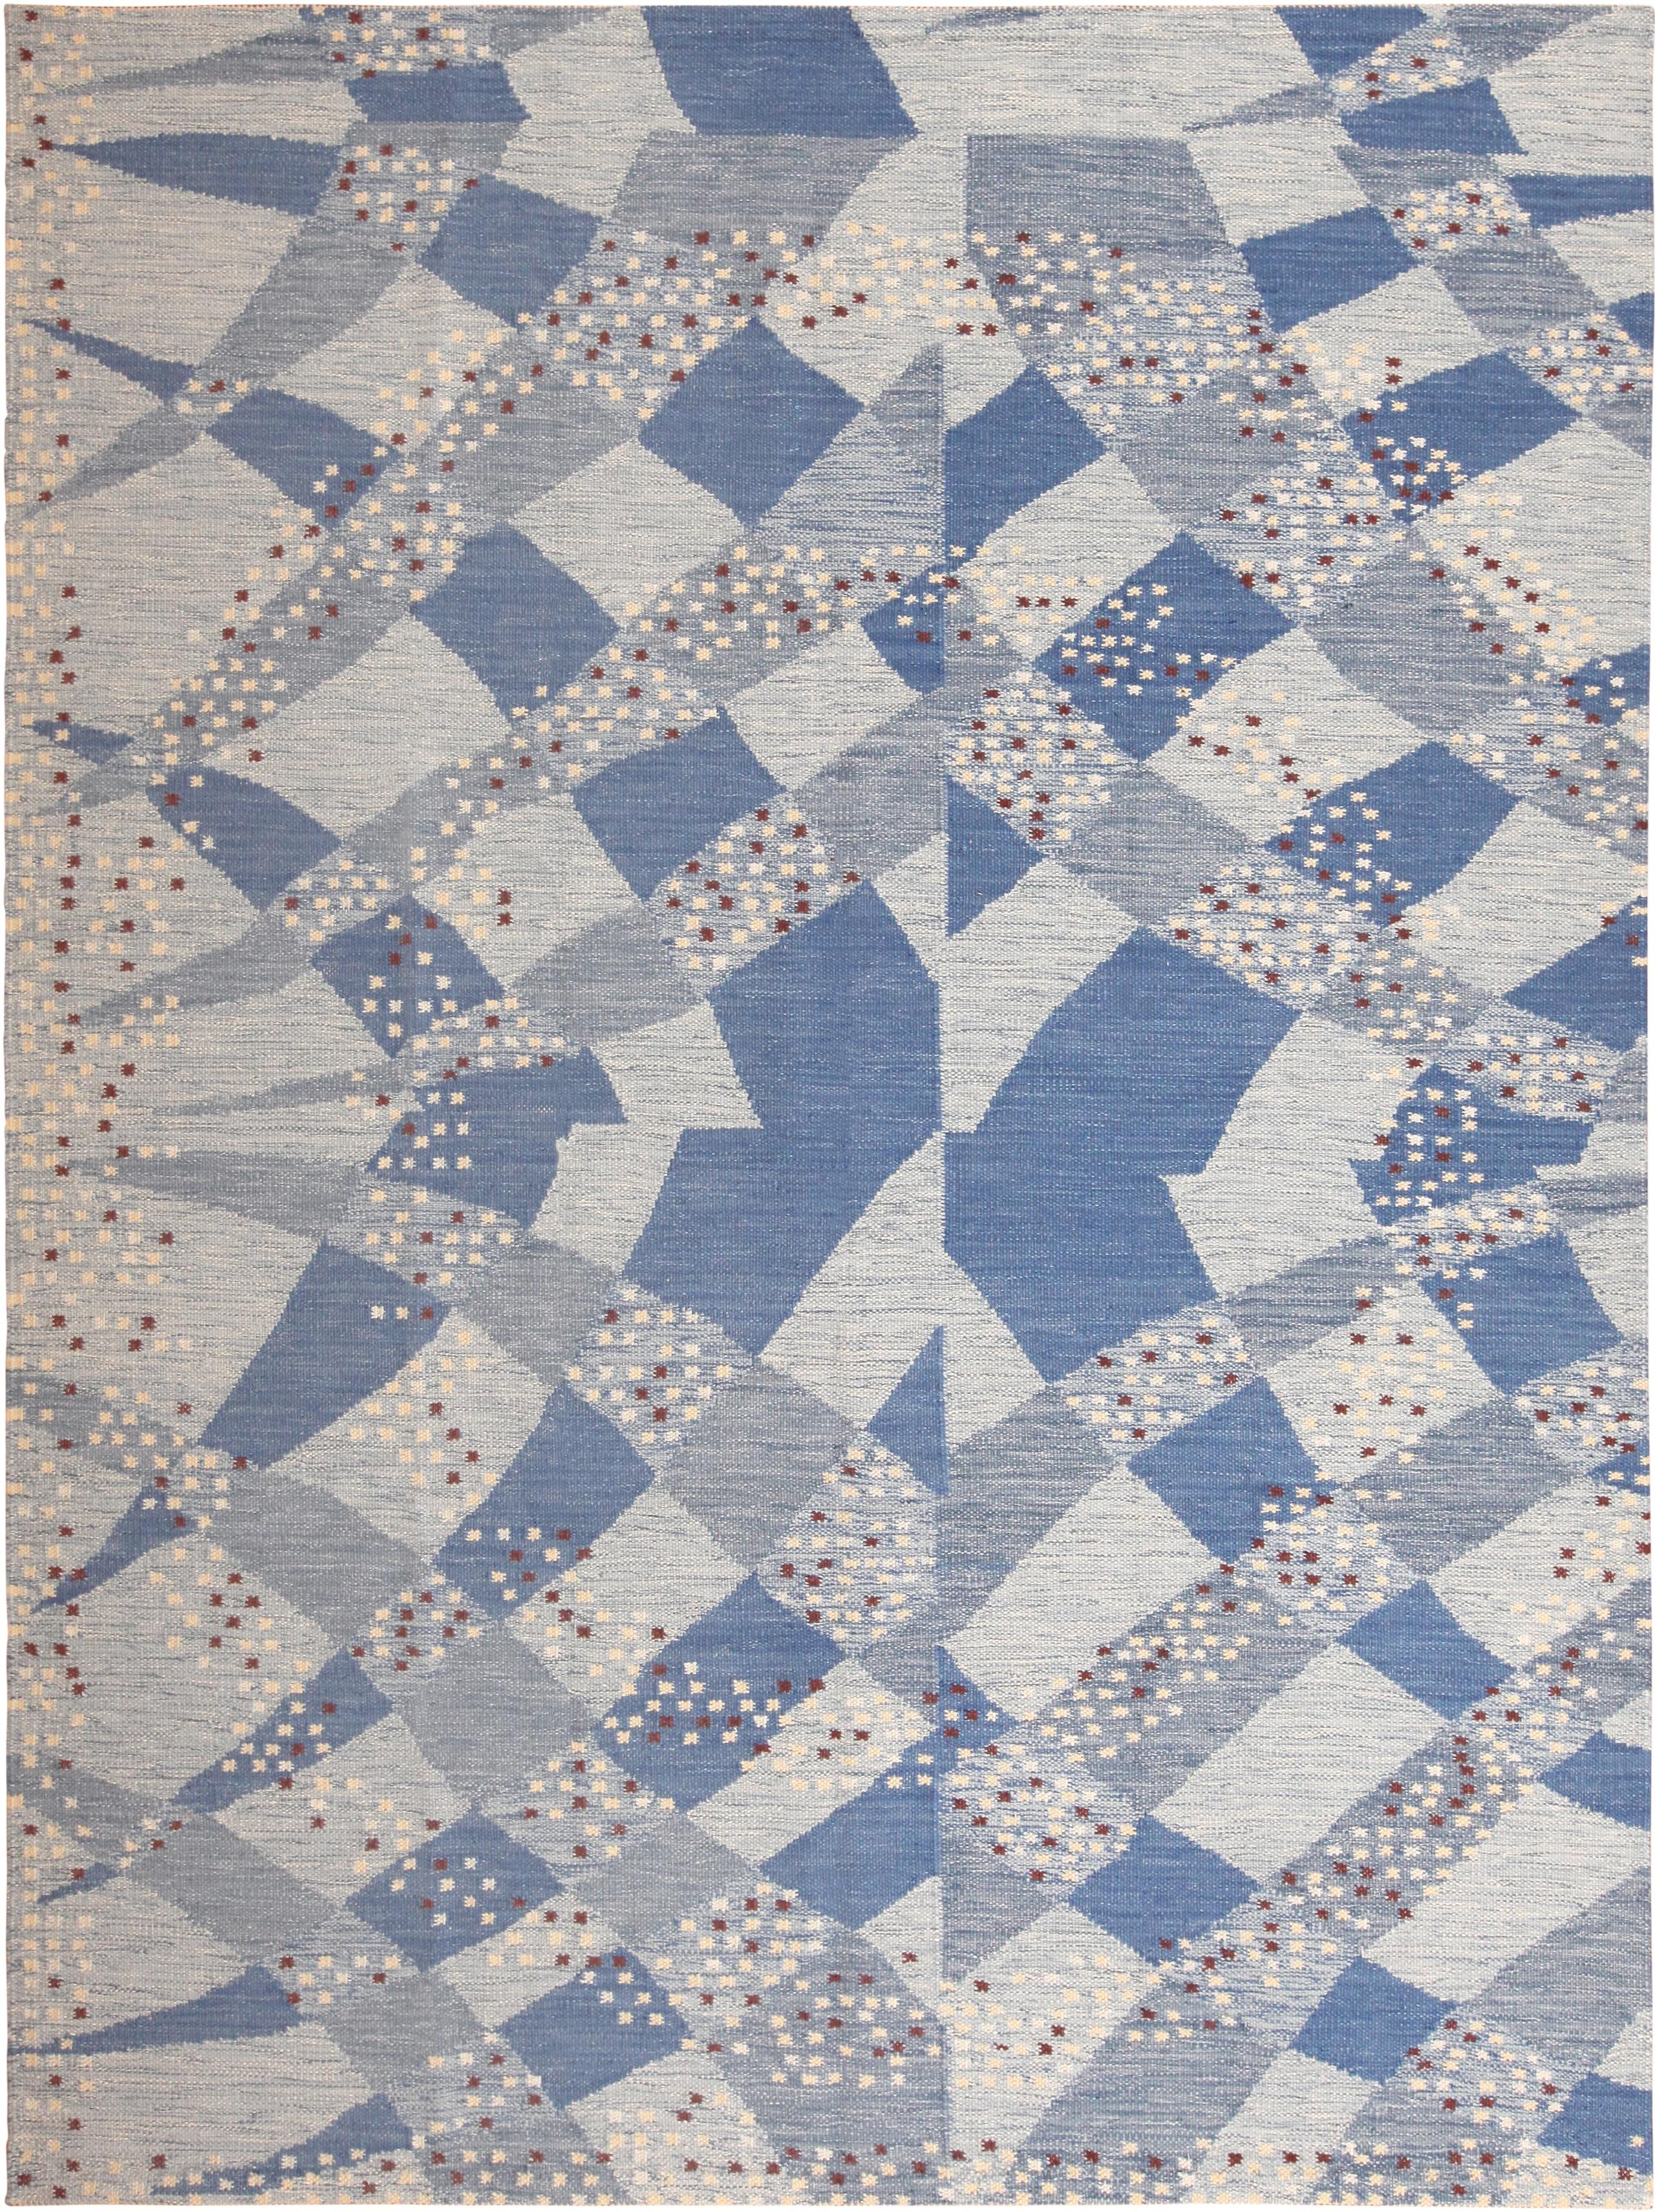 Magnifique tapis moderne tissé à plat de style suédois, bleu, pays d'origine : Tapis modernes de l'Inde. Circa date : Moderne. Taille : 9 ft 3 in x 12 ft 2 in (2,82 m x 3,71 m)

